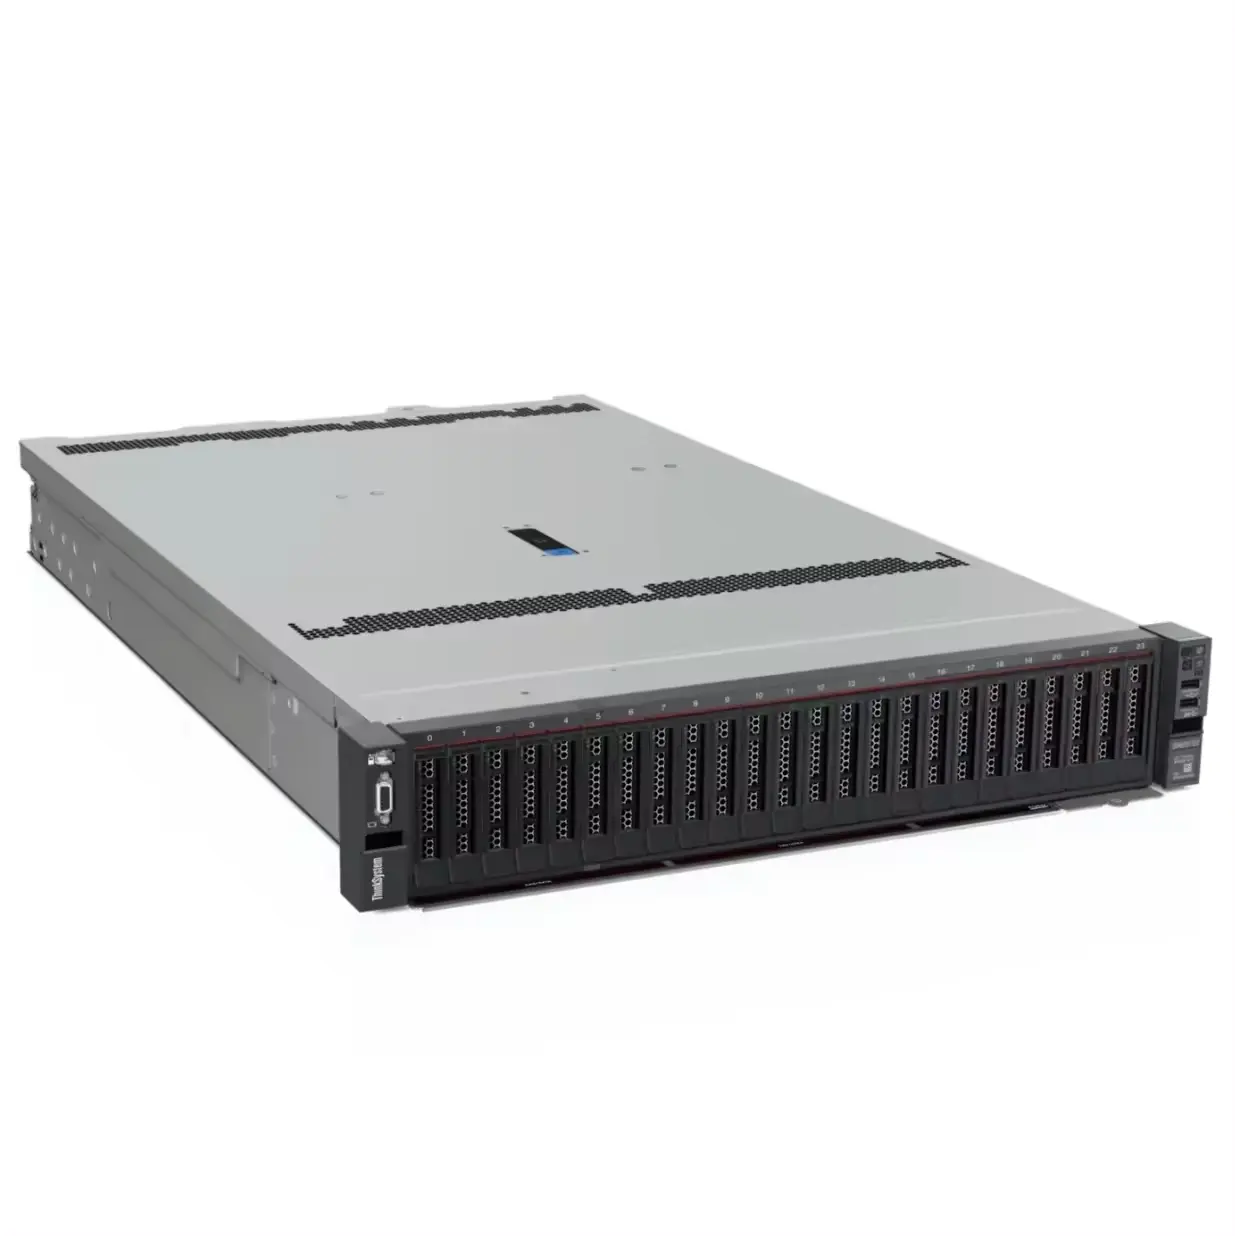 थिंकसिस्टम SR655 V3 एक 1-सॉकेट 2U सर्वर है जो AMD EPYC 9004 "जेनोआ" प्रोसेसर परिवार की सुविधा देता है।